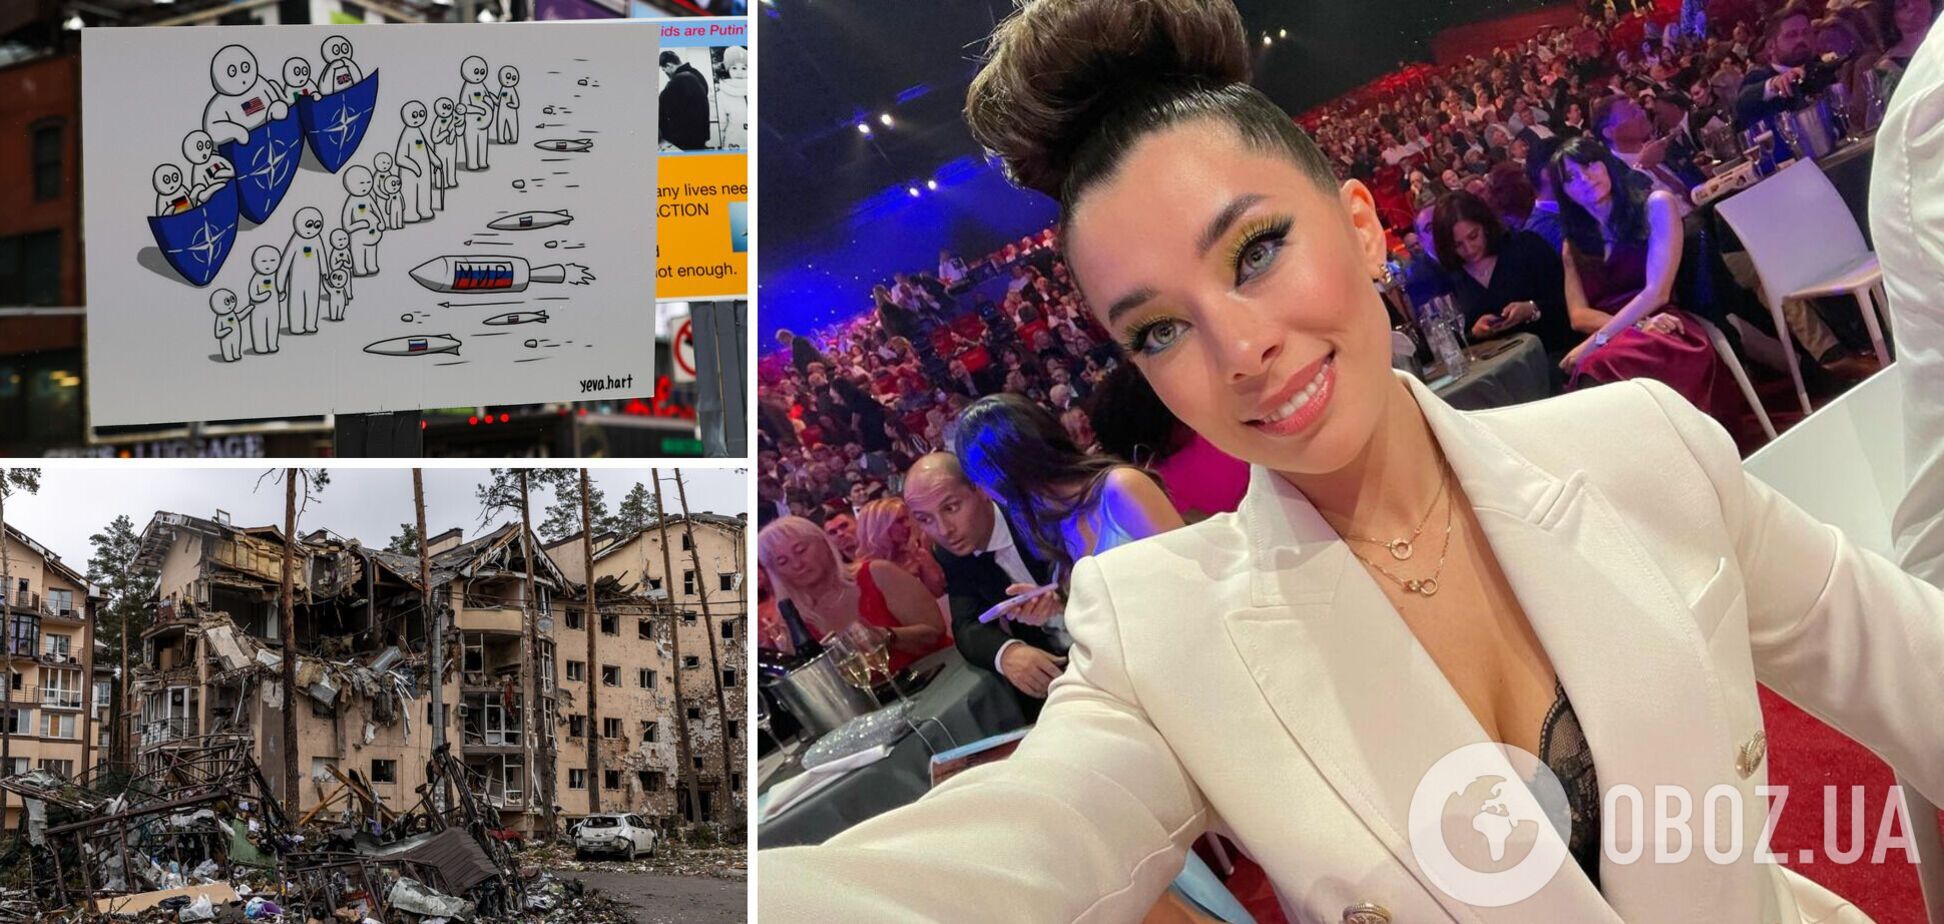 'Міс Україна Всесвіт' Анна Неплях зворушила зал промовою про Україну на конкурсі краси в Бельгії